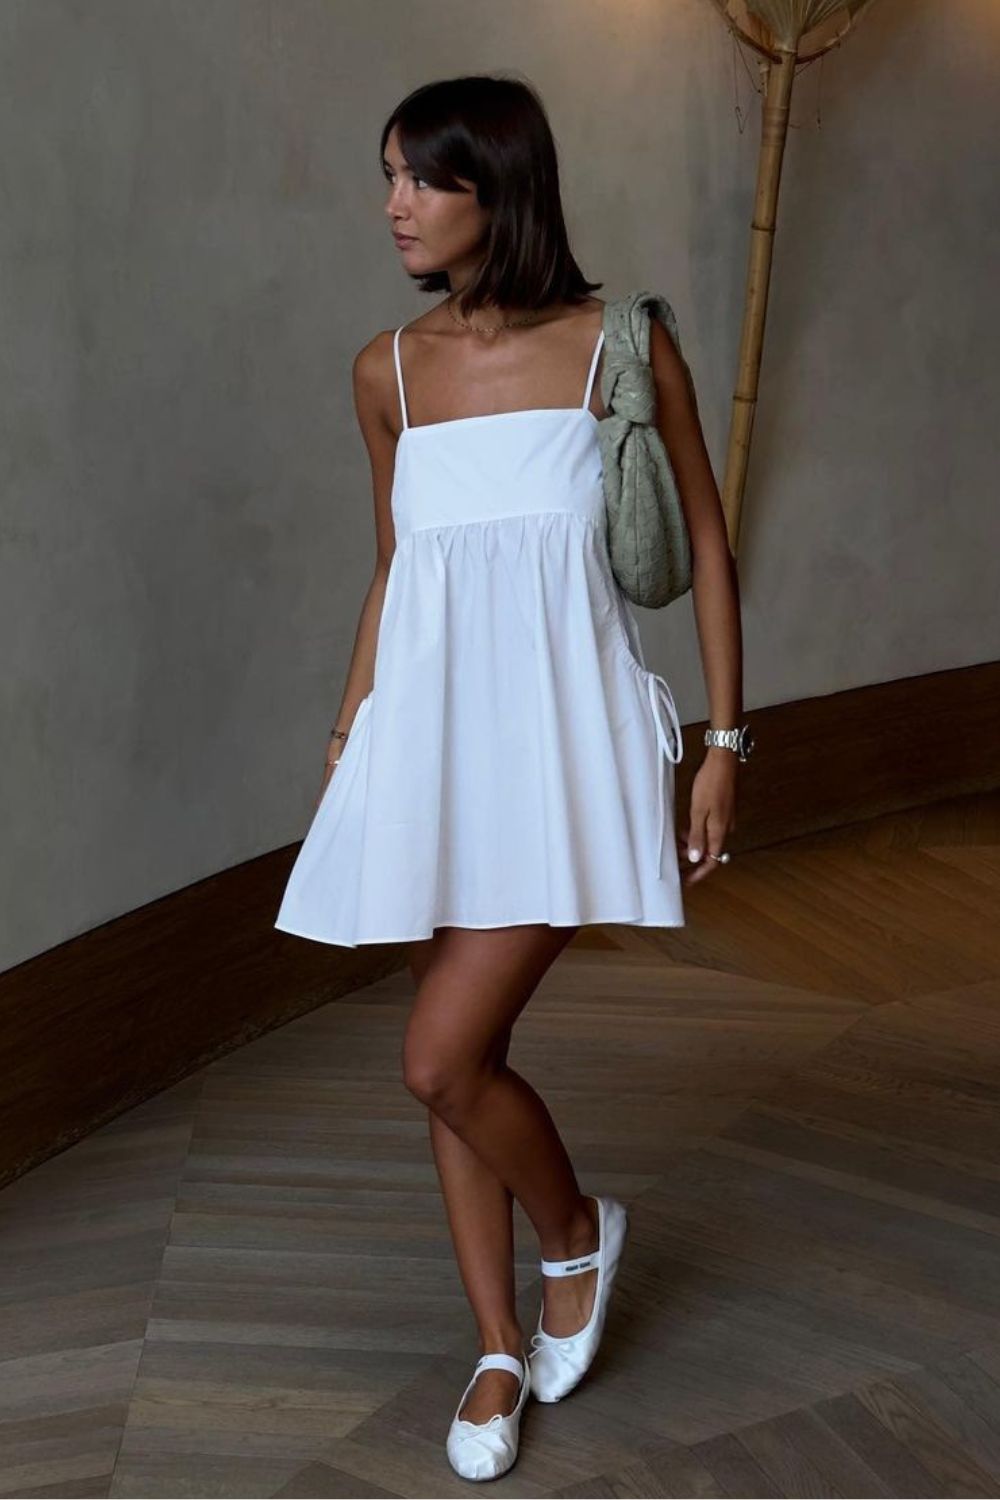 Looks de calor, breeze dress, vestido branco rodado, bolsa baguete e sapatilha branca